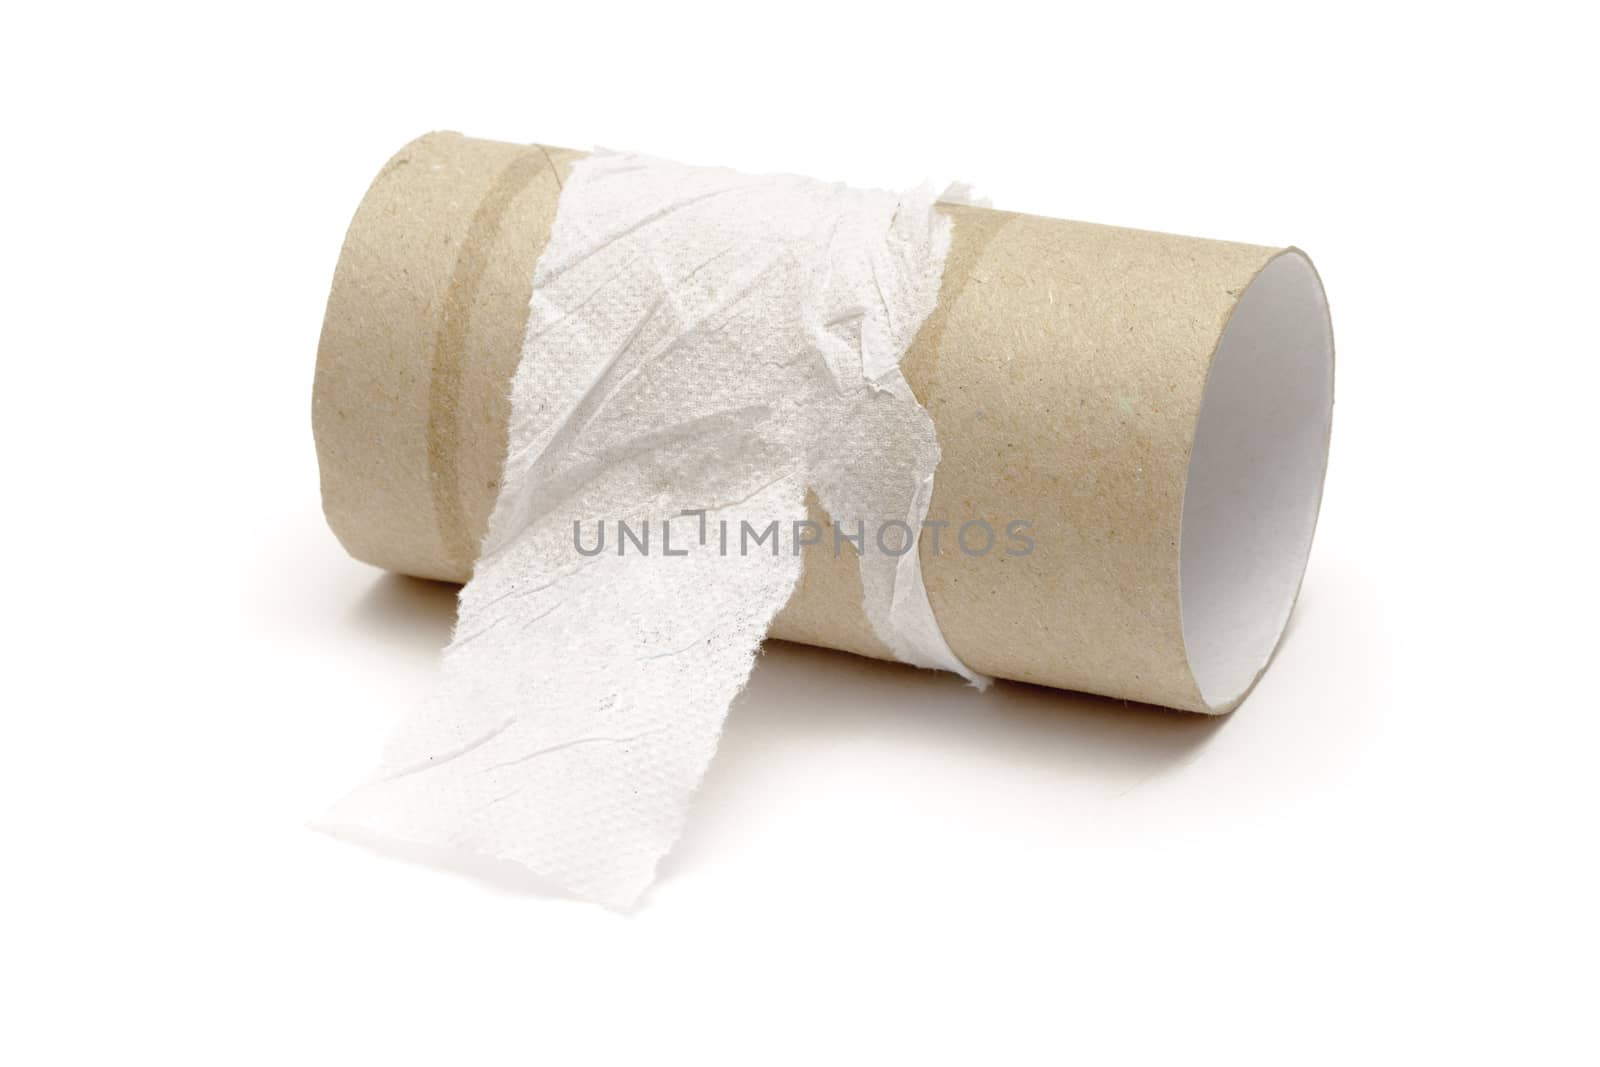 Empty toilet paper roll by marslander